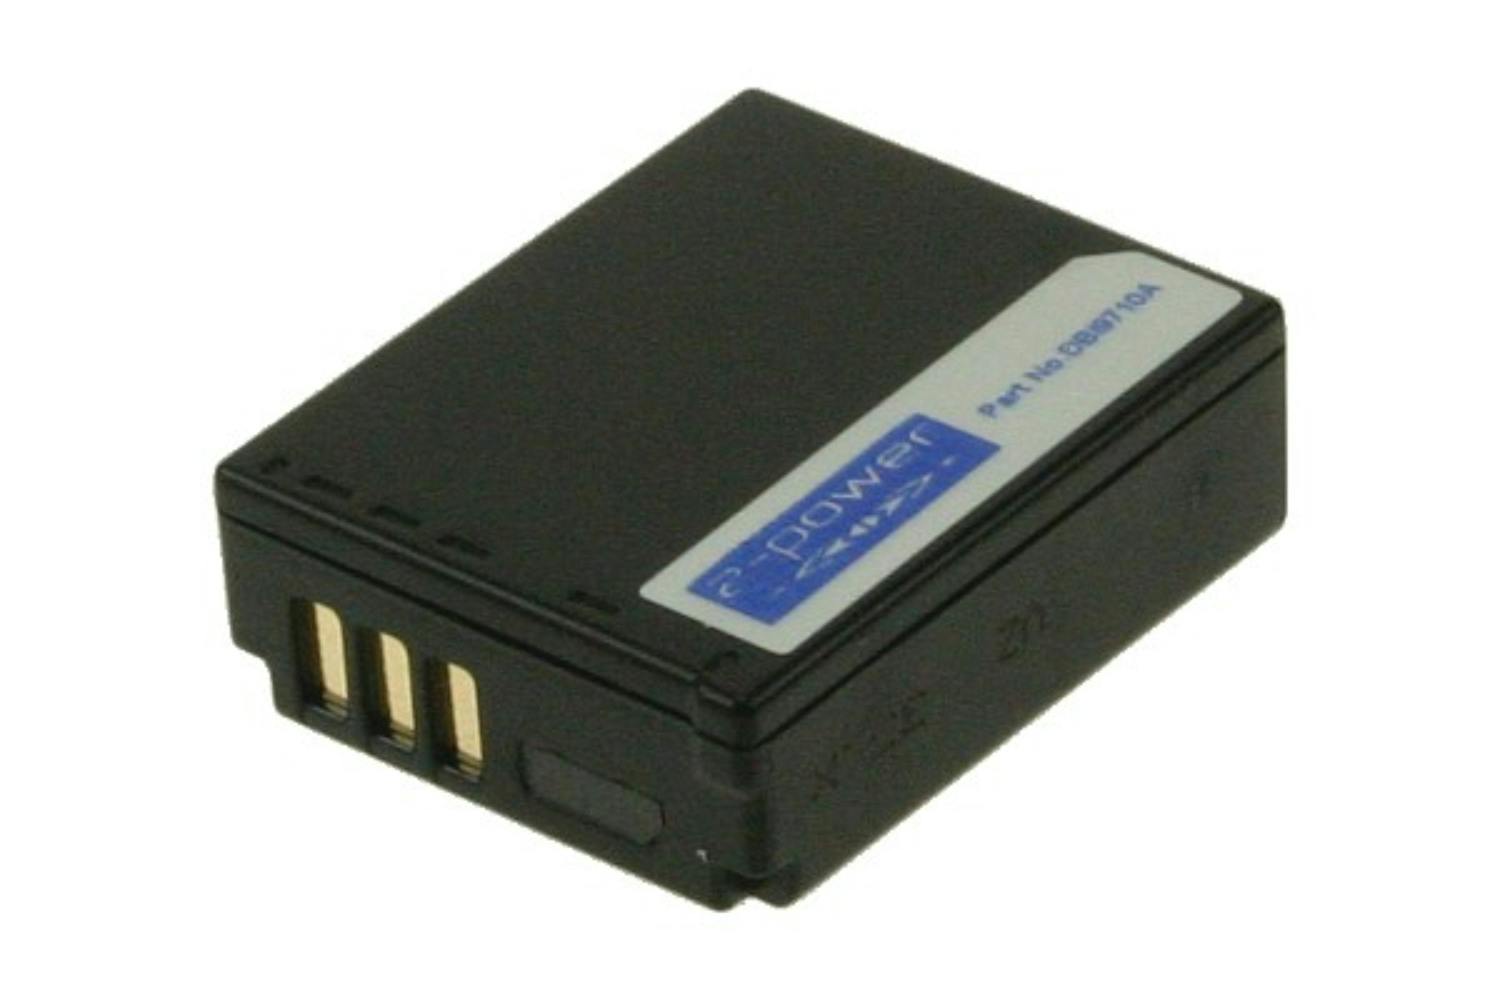 2-Power 1000mAh Digital Camera Battery